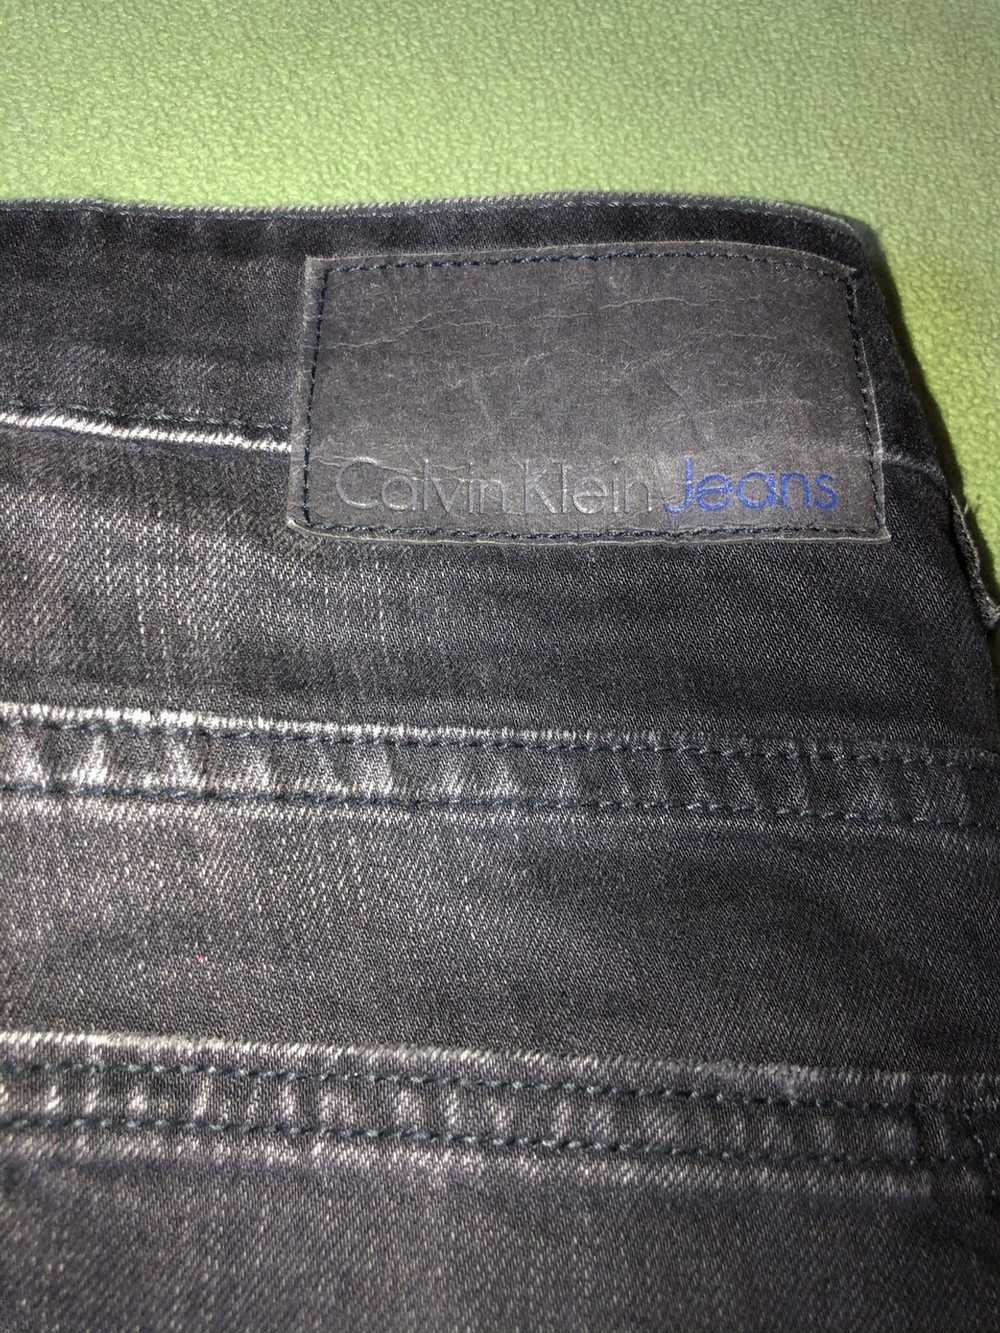 Calvin Klein Biker Jeans - image 5